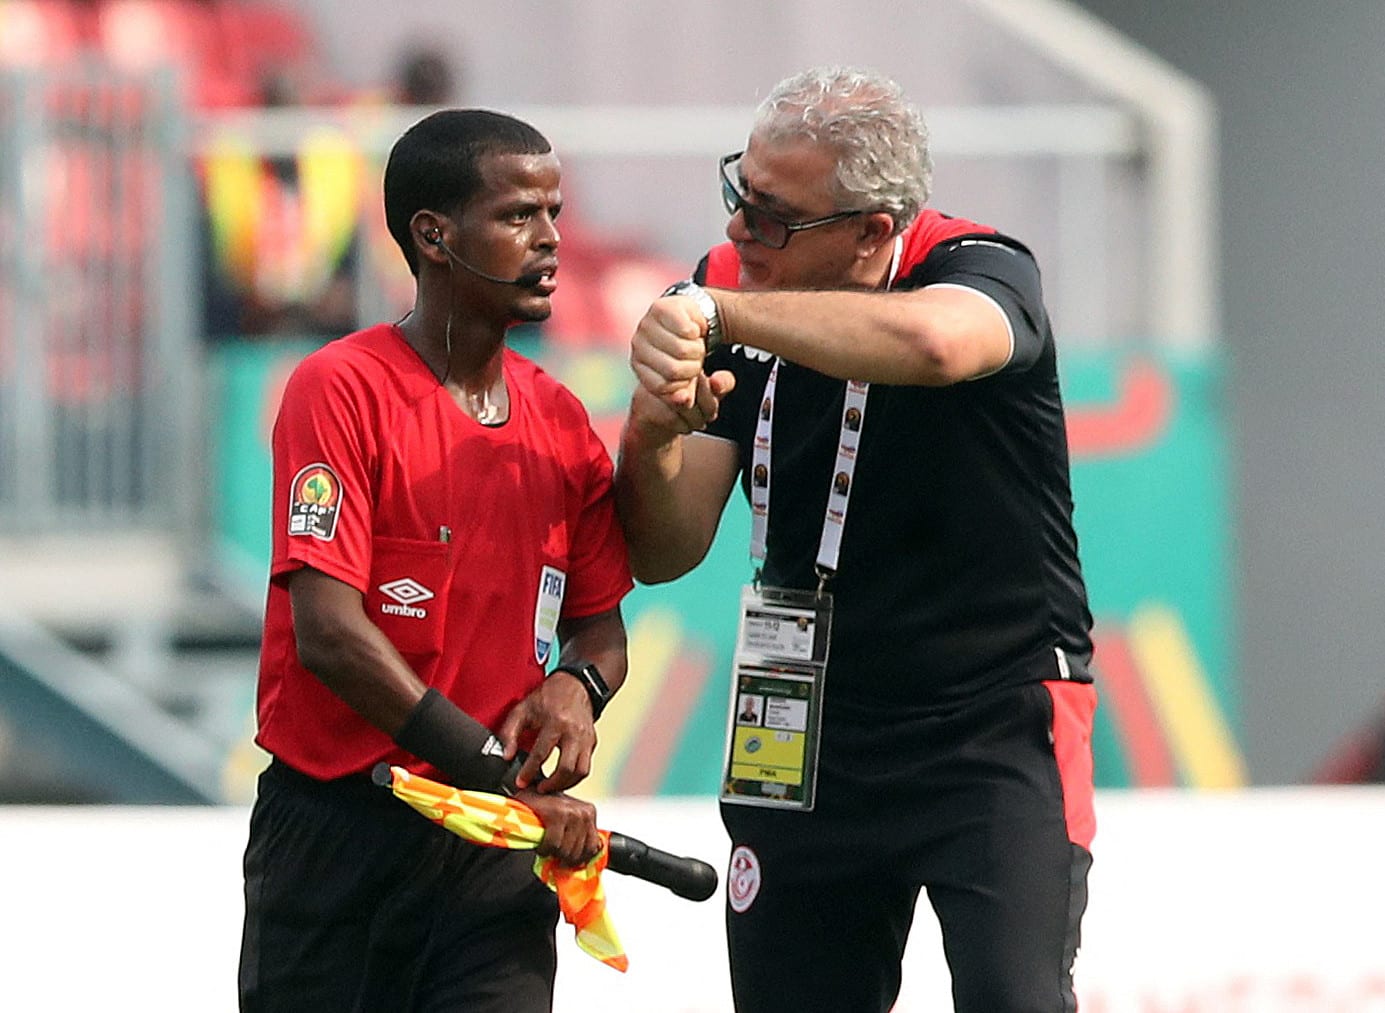 מונדר קבאייר מאמן נבחרת טוניסיה מתלונן בפני הקוון על שריקת הסיום המוקדמת